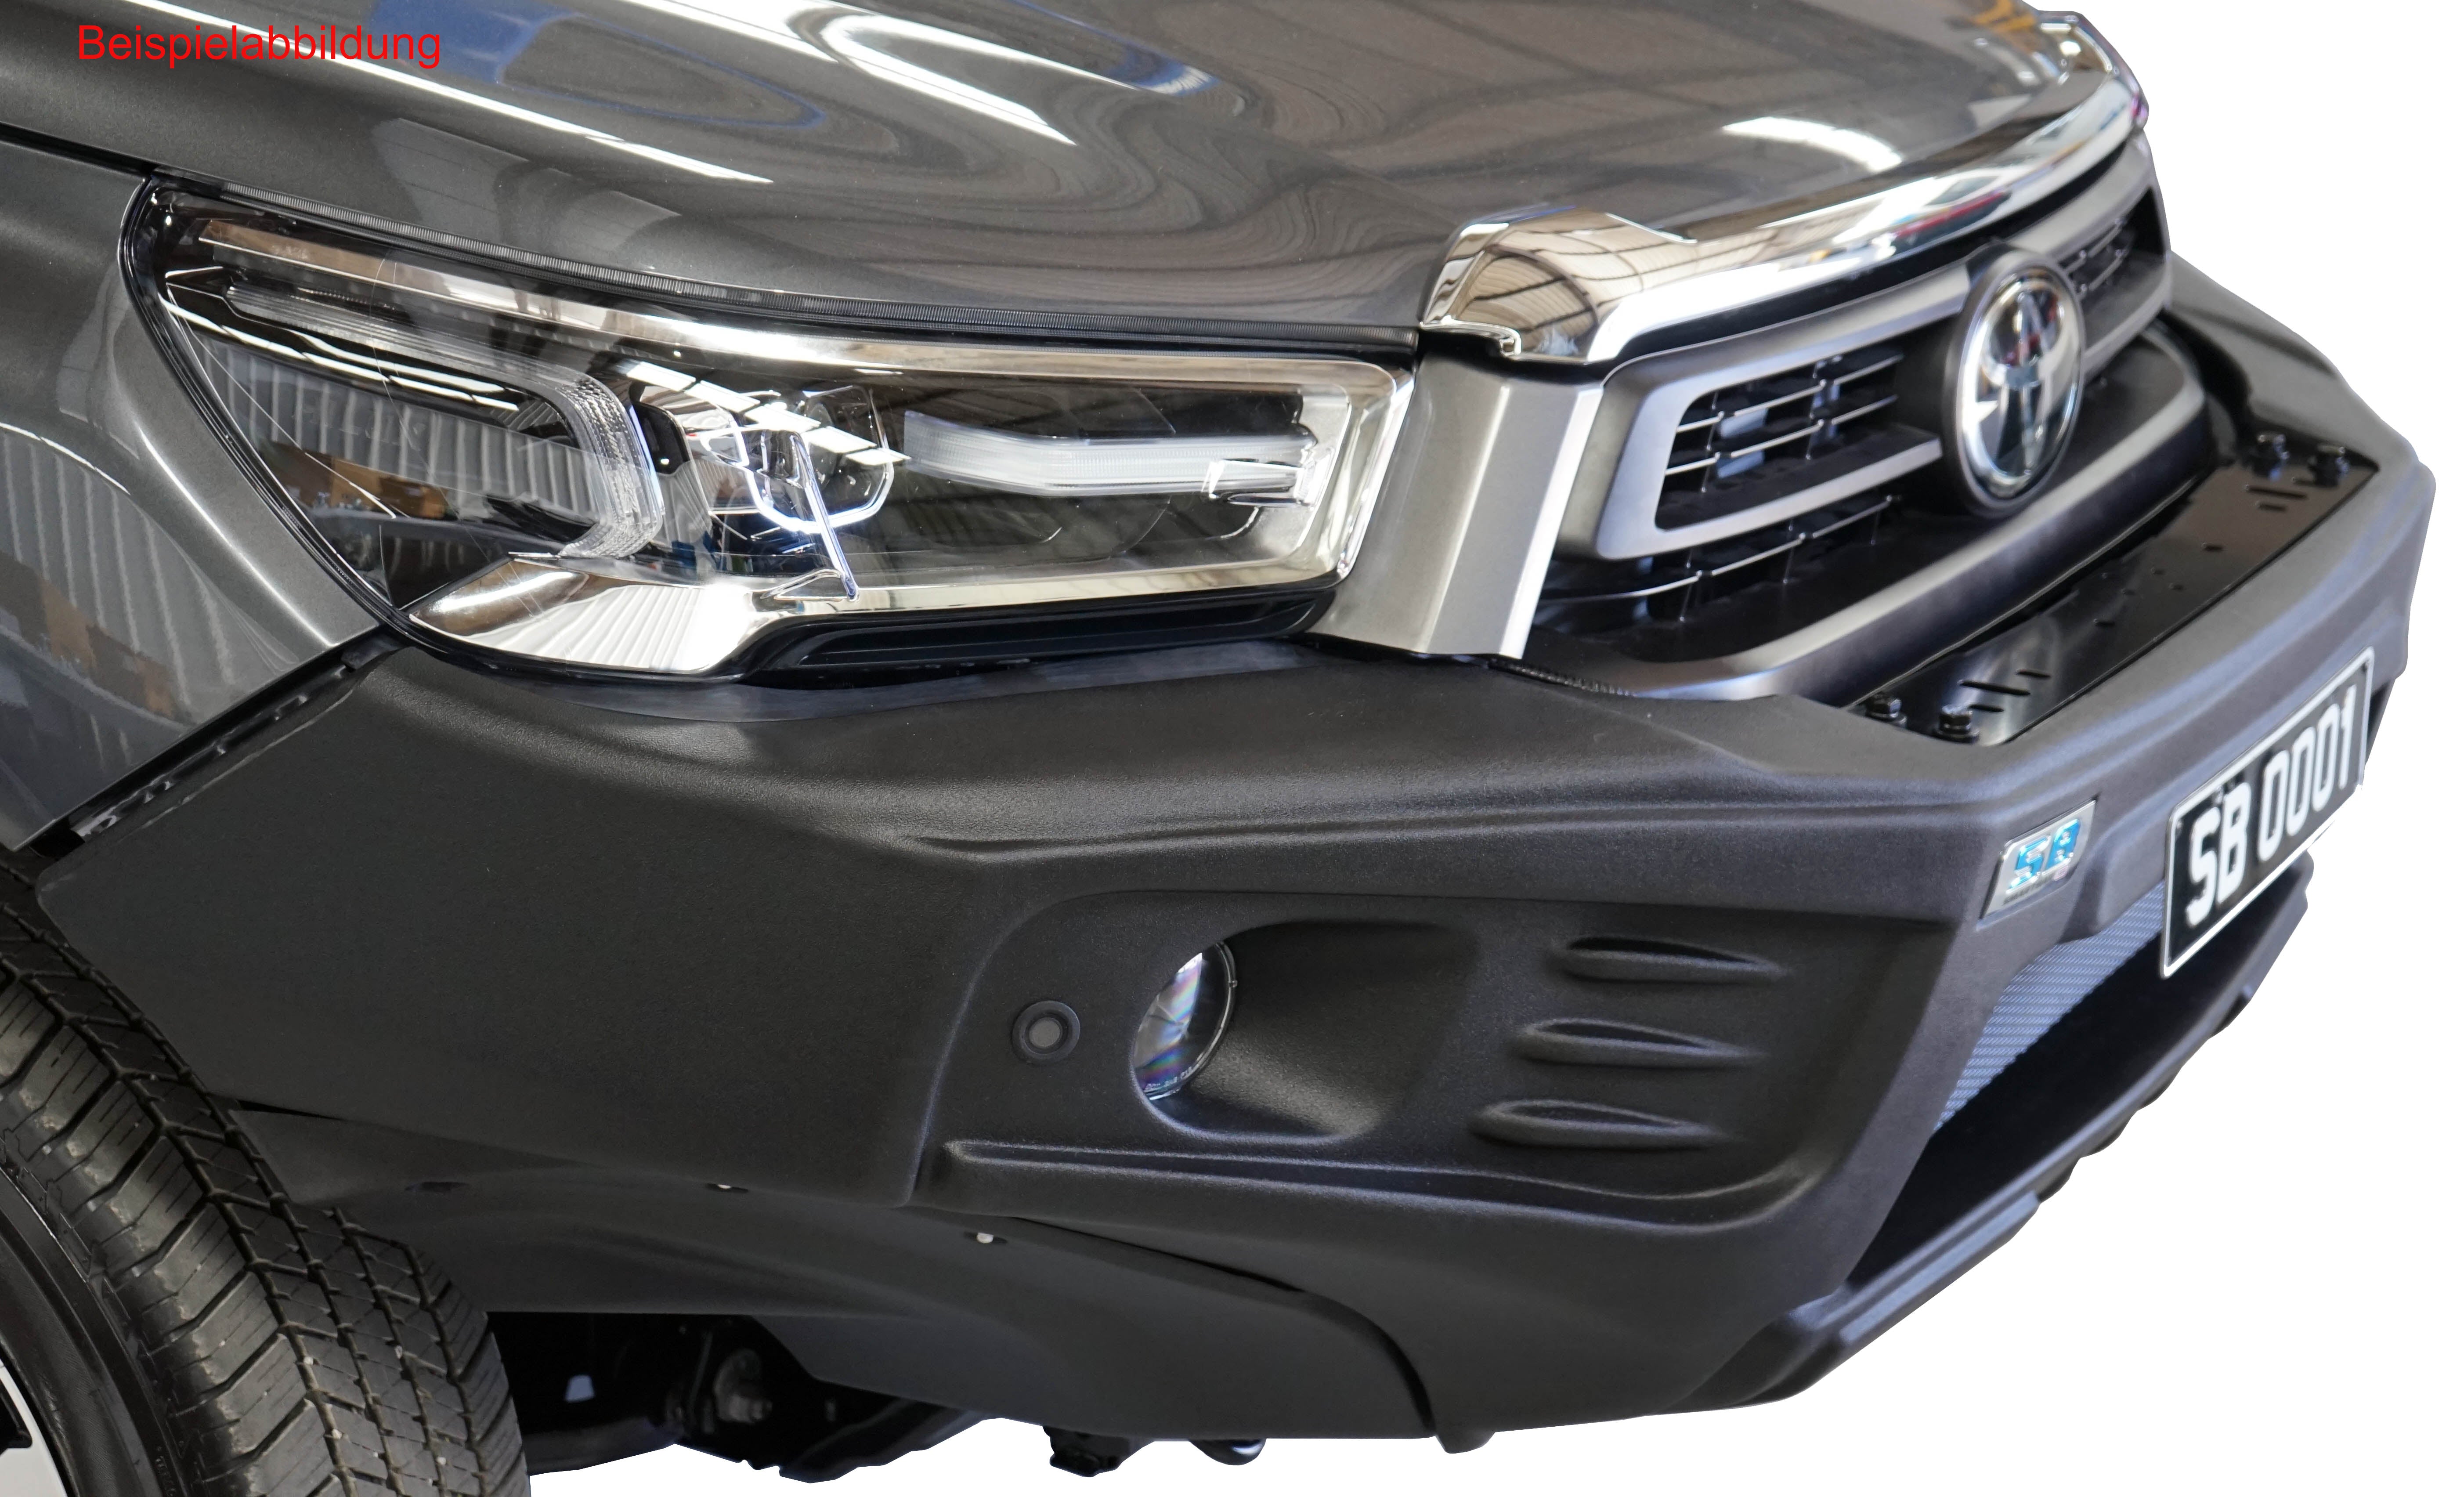 ARB Stealthbar HD-Seilwindenstoßstange für Toyota Hilux (ab 2015+) mit Gutachten, Nebelscheinwerfer, Montagkit